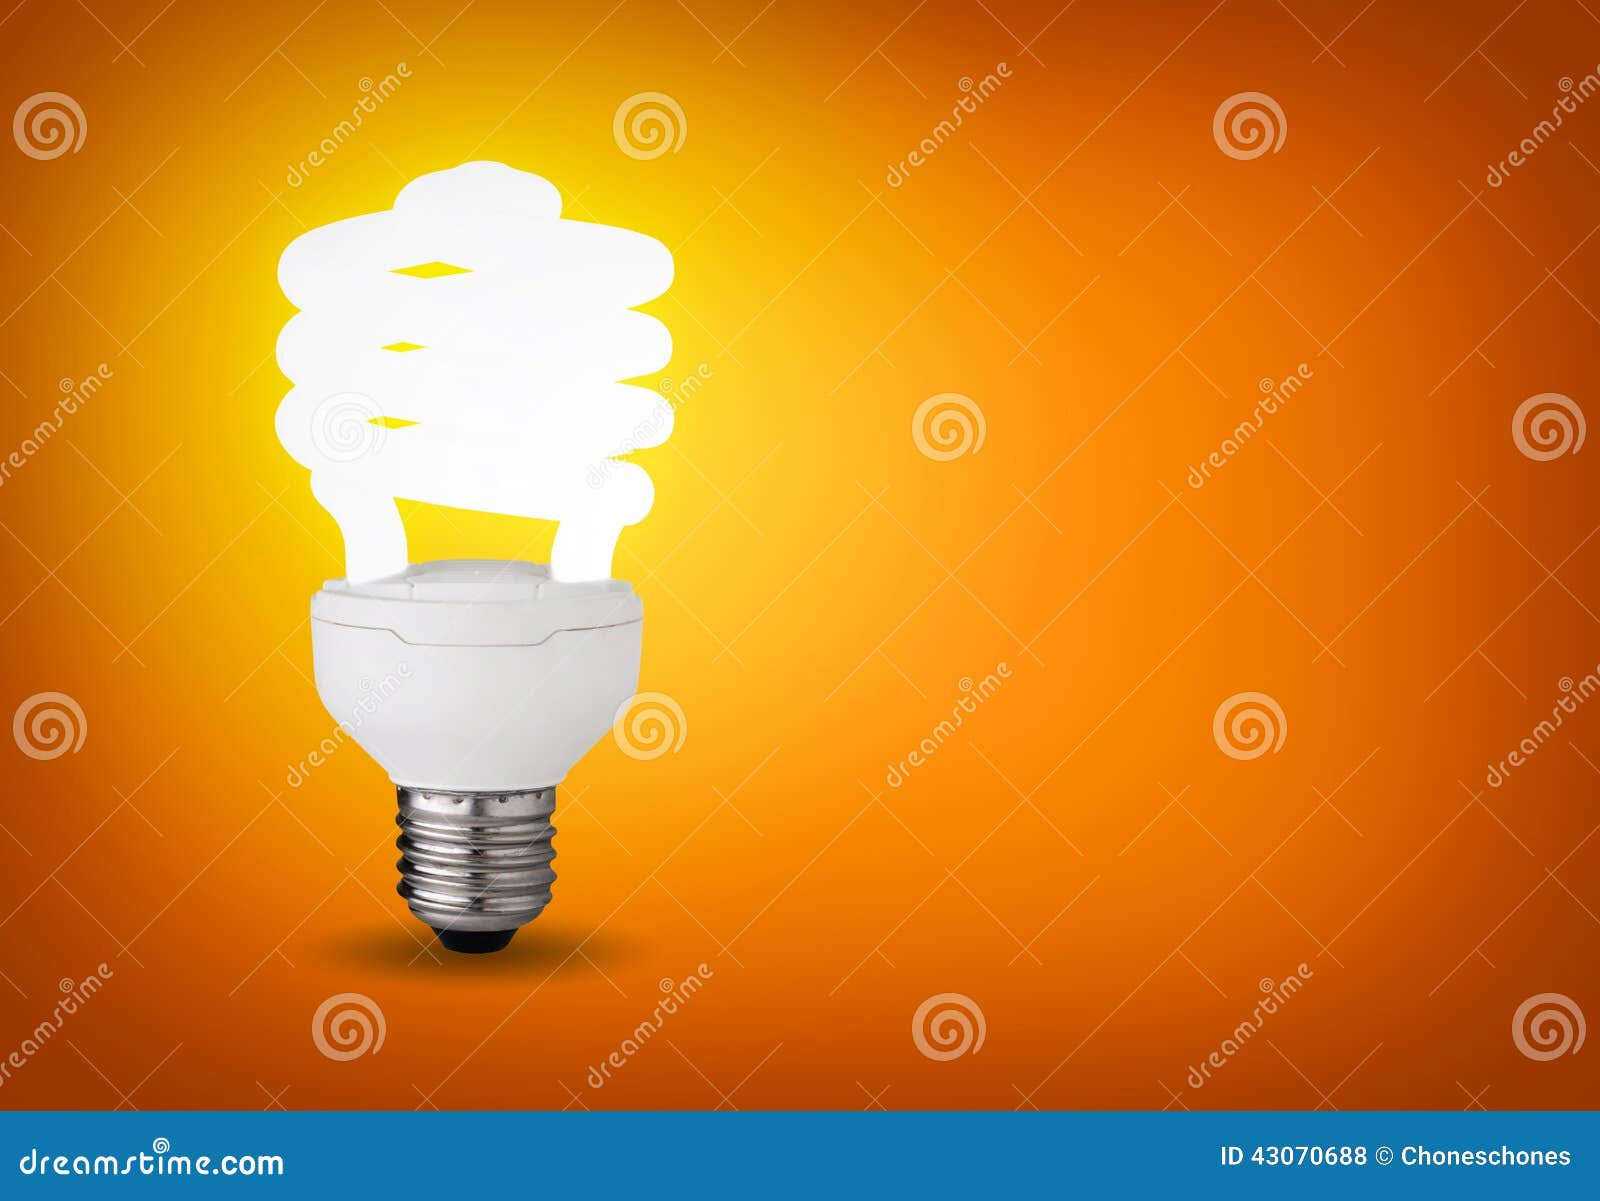 3d电灯泡能源虚构图象徽标救星端写. 与发光的节能器电灯泡的想法概念